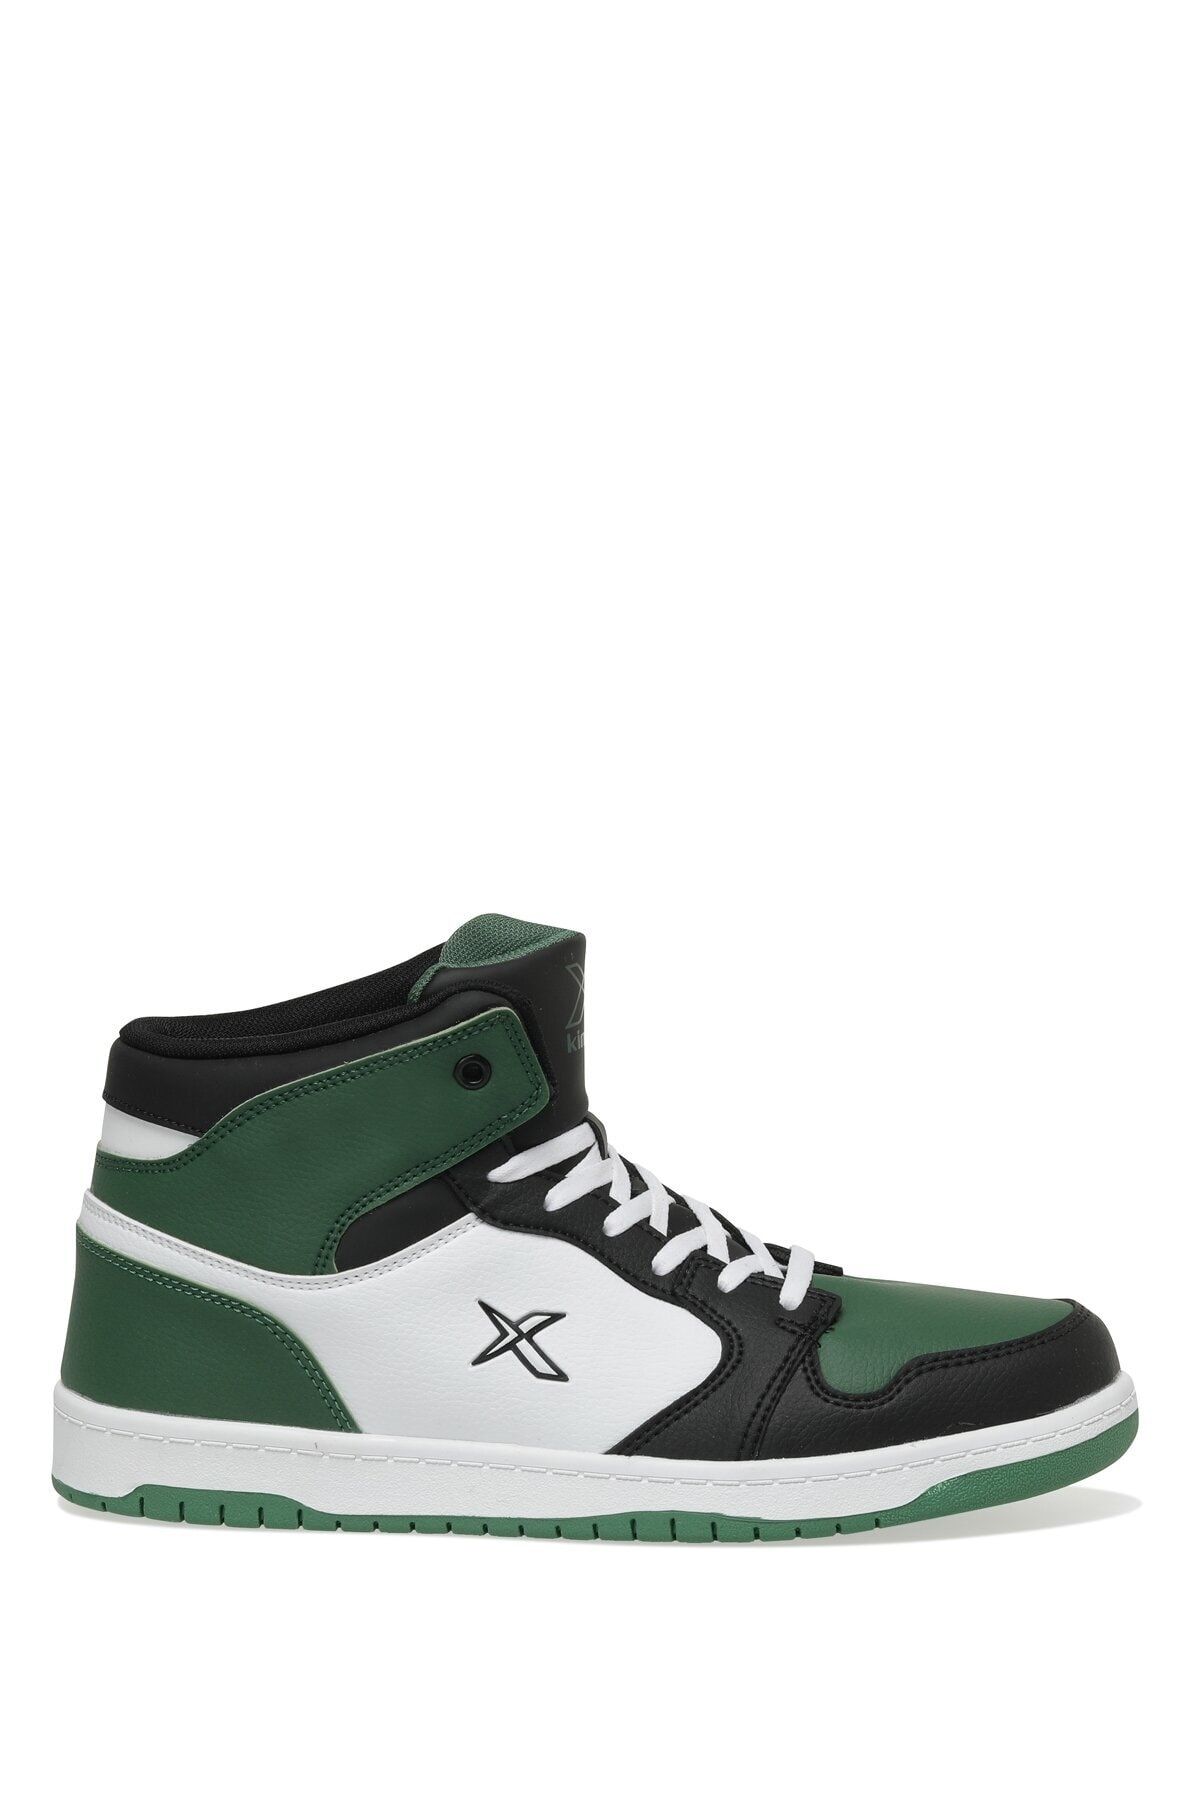 Kinetix Jones Hı Pu 3fx Yeşil Erkek High Sneaker